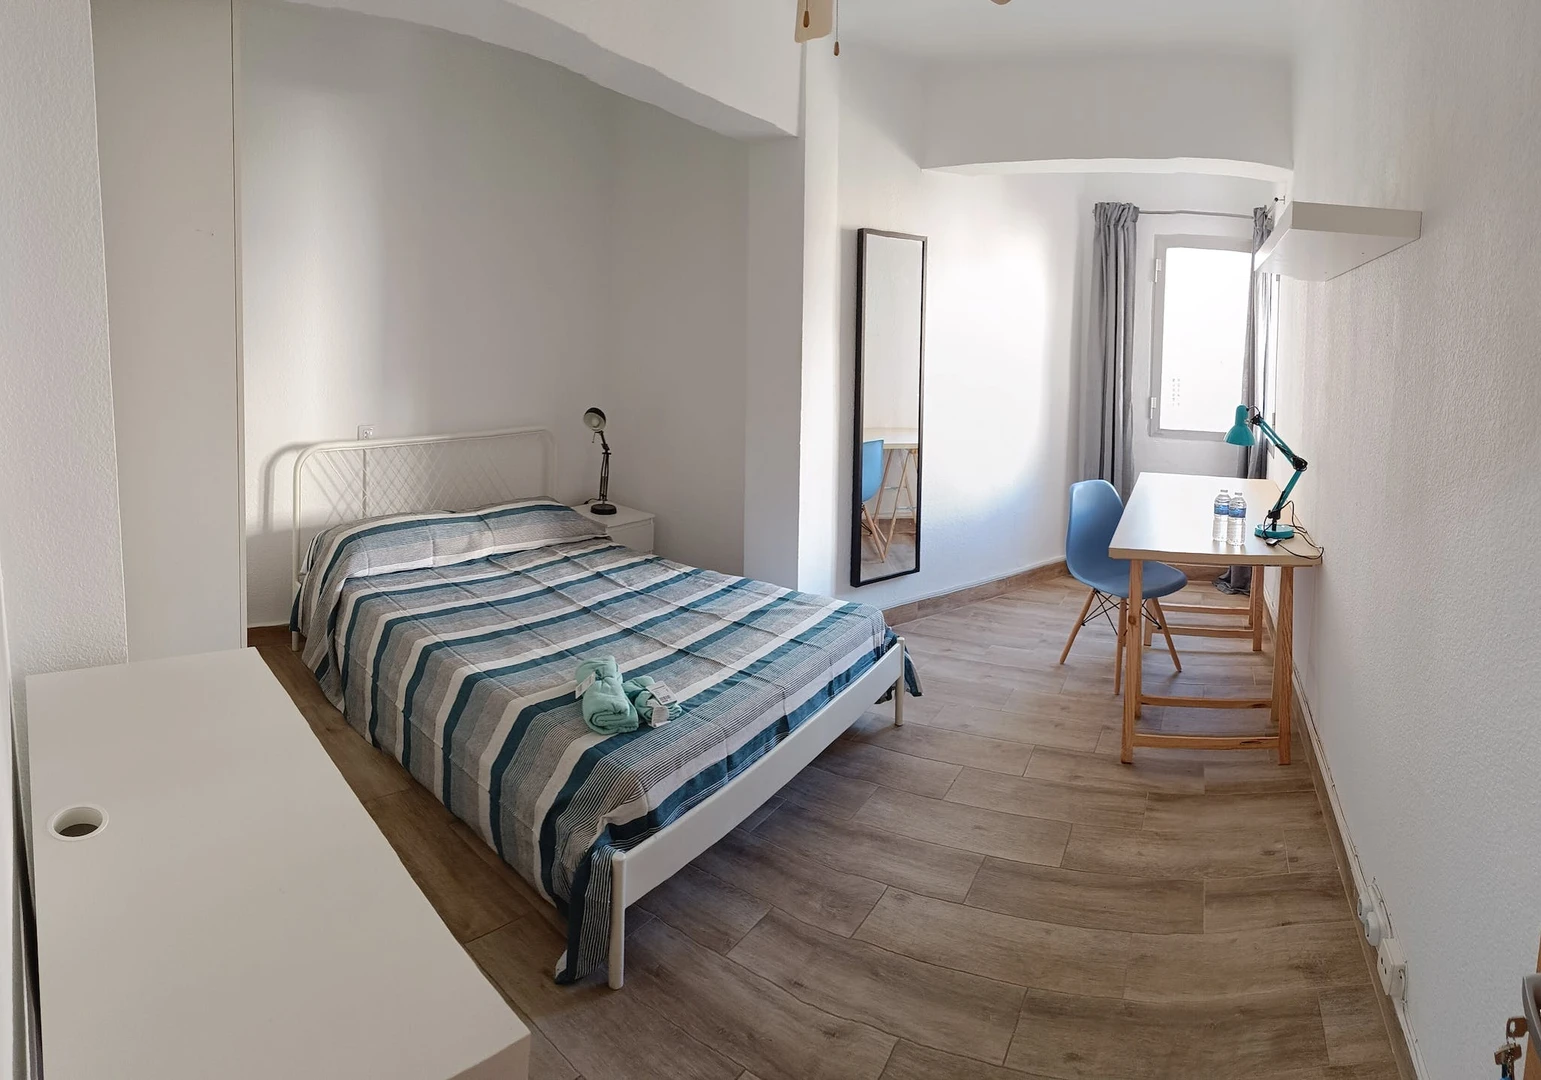 Cheap private room in almeria